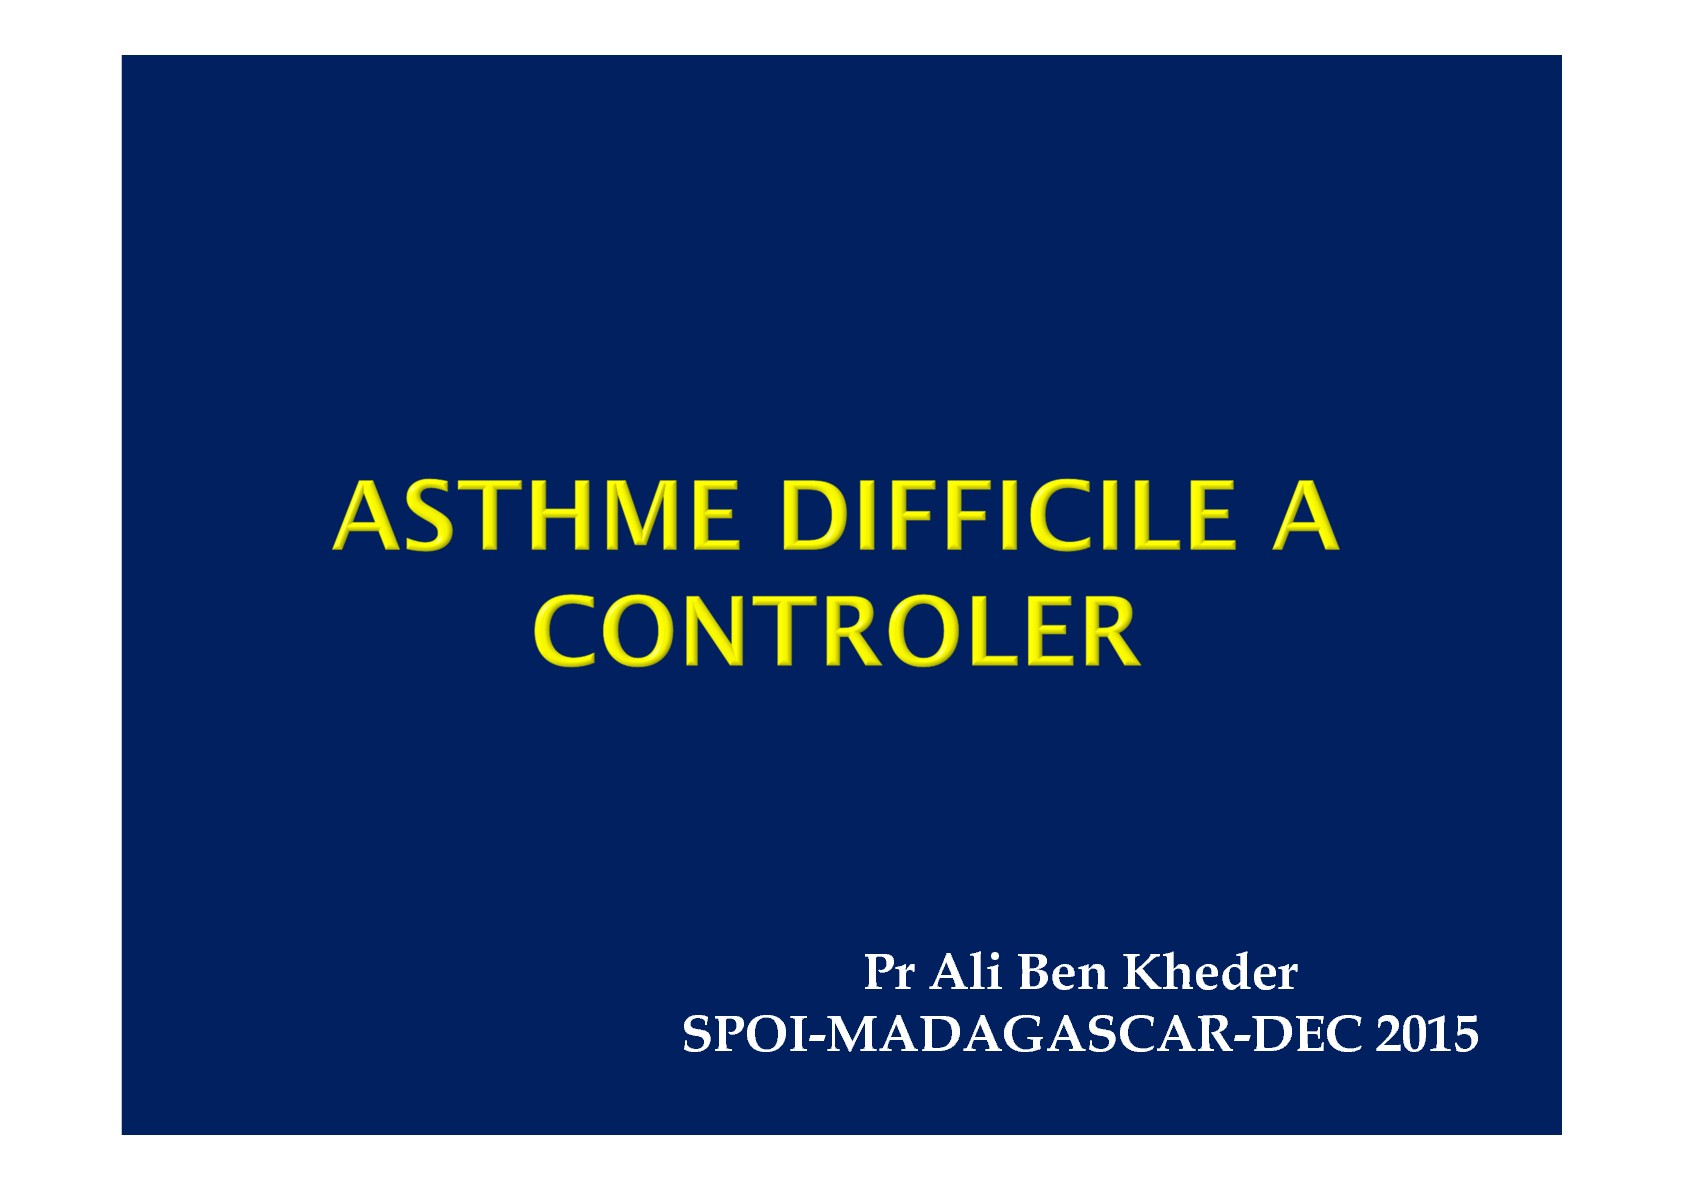 Asthme difficile à contrôler. Ali Ben Kheder